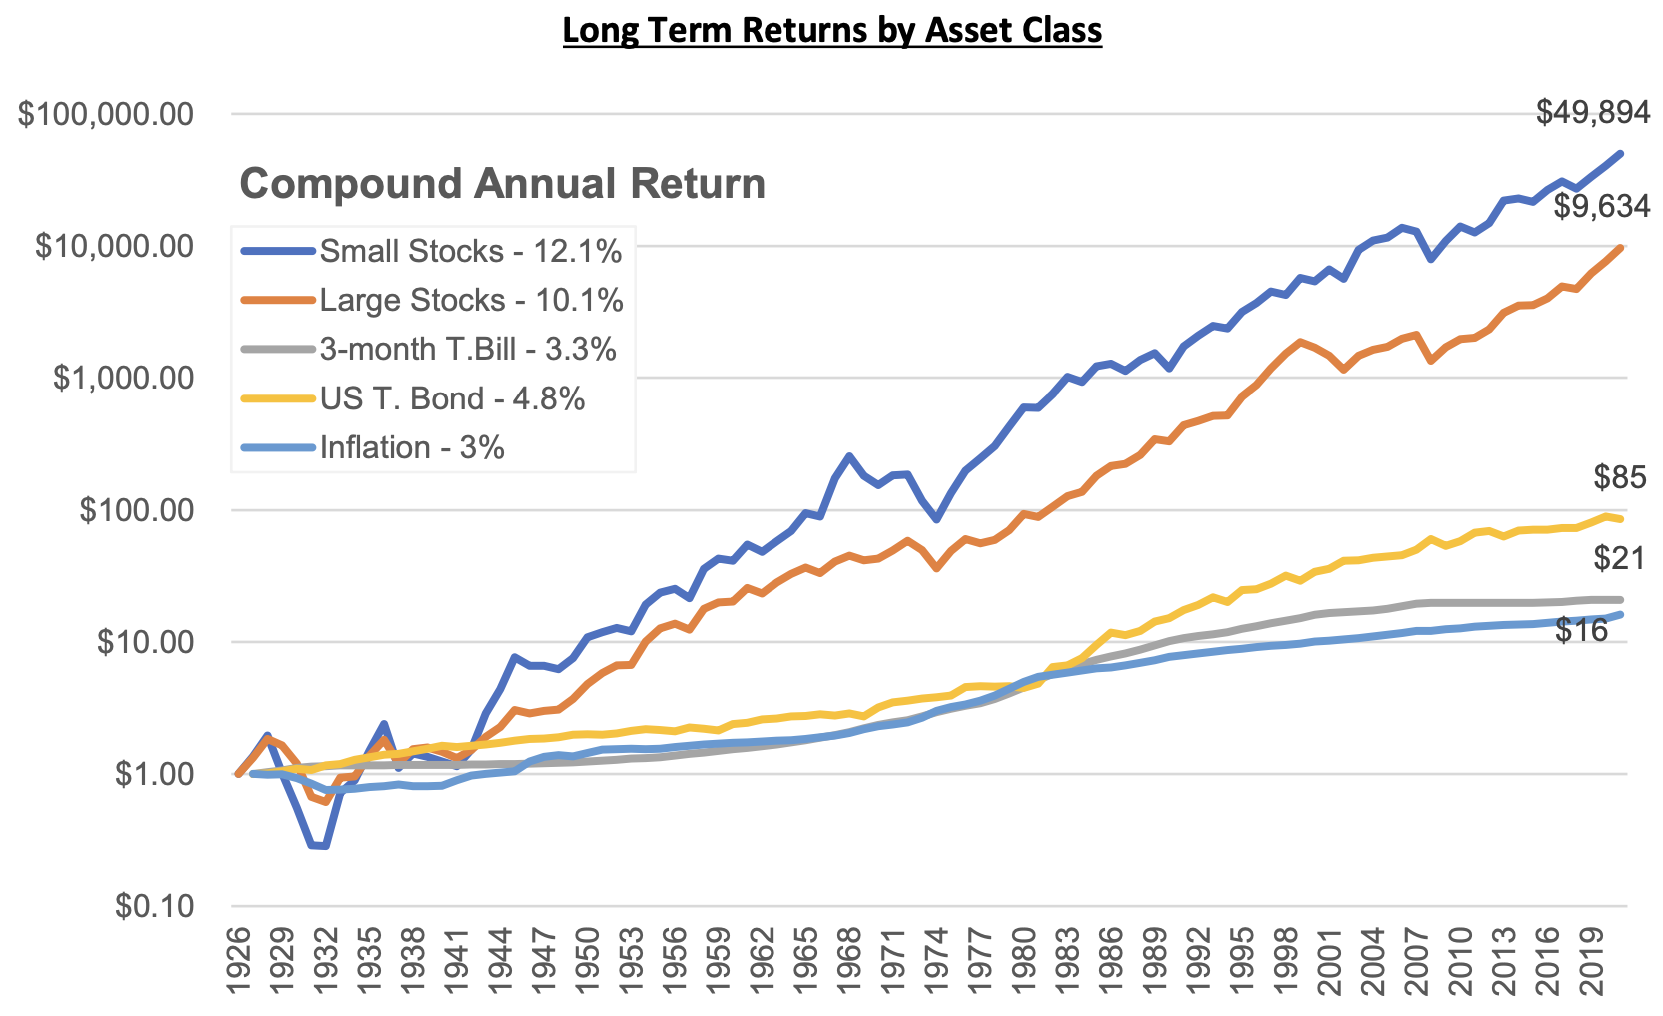 Long-Term Returns By Asset Class